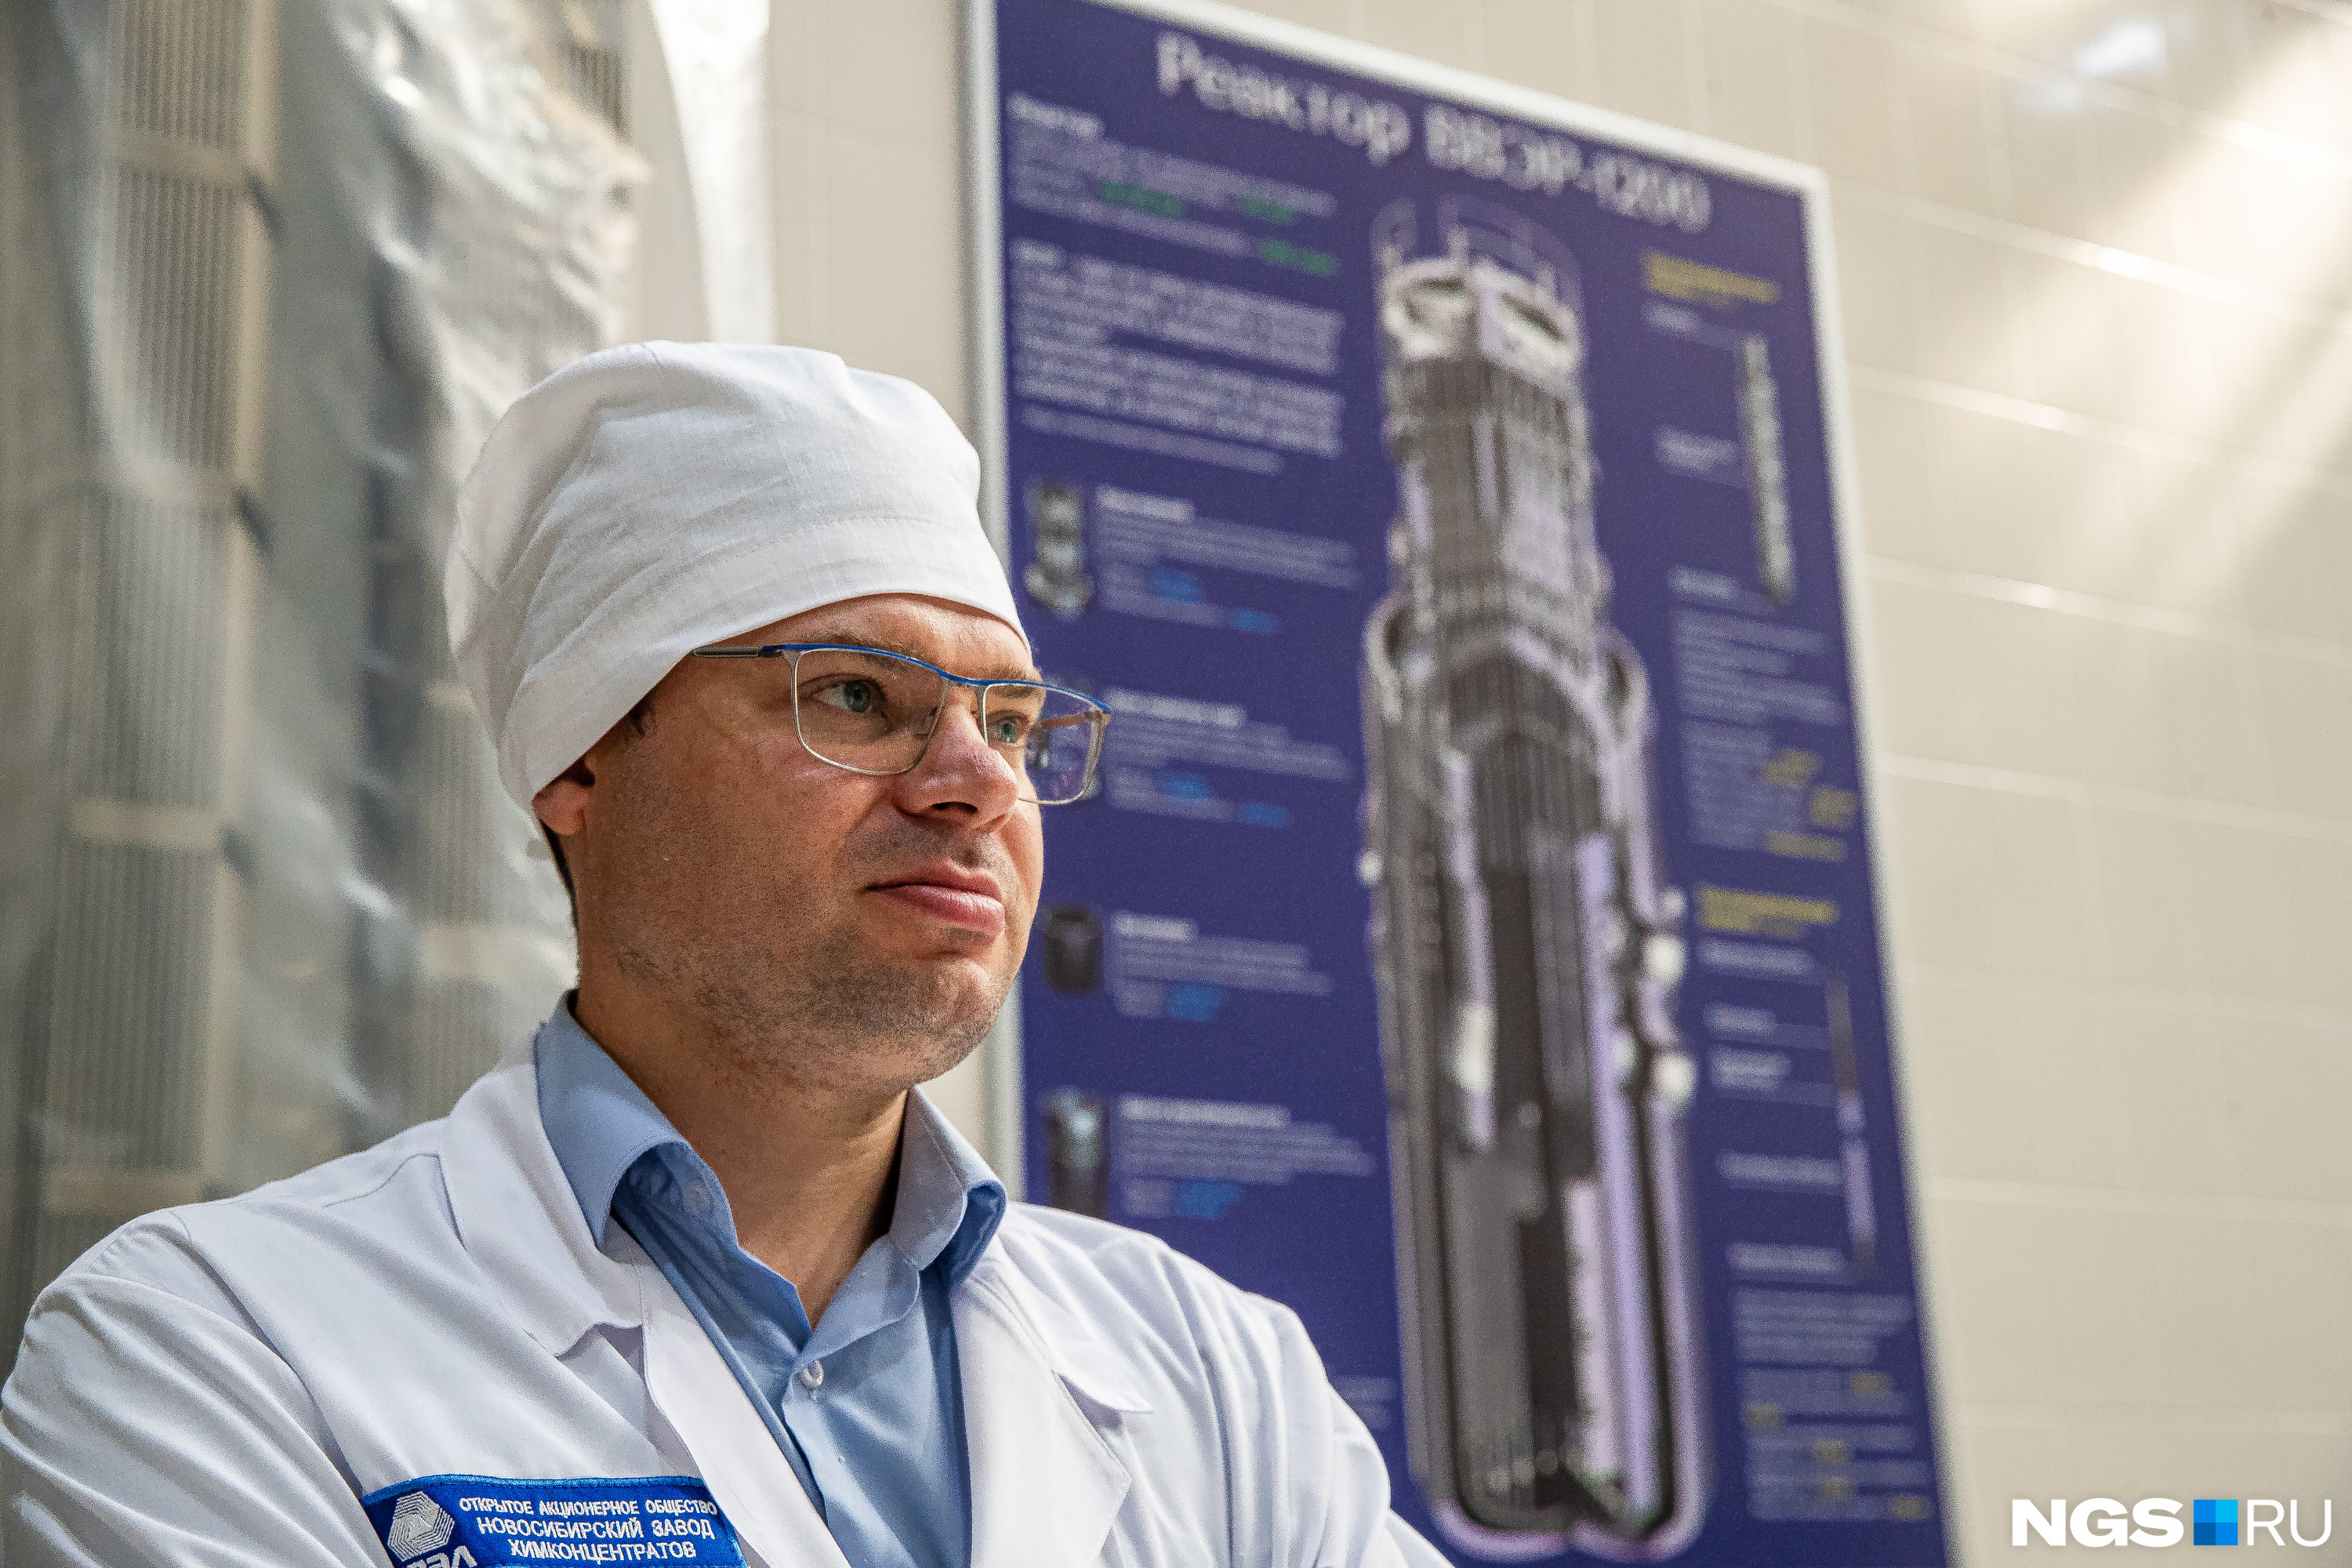 Иван Пильчик — заместитель главного инженера по ядерной, радиационной, промышленной безопасности и экологии